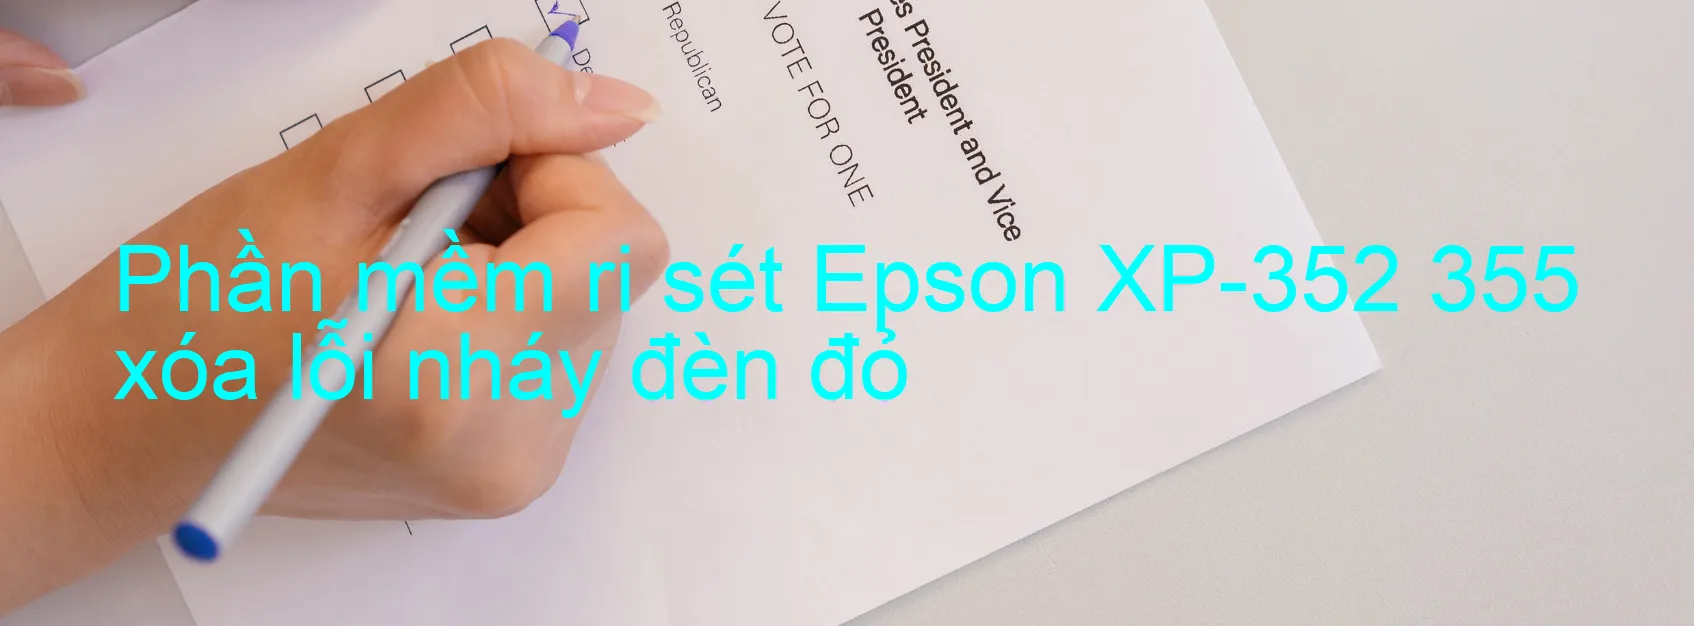 Phần mềm reset Epson XP-352 355 xóa lỗi nháy đèn đỏ